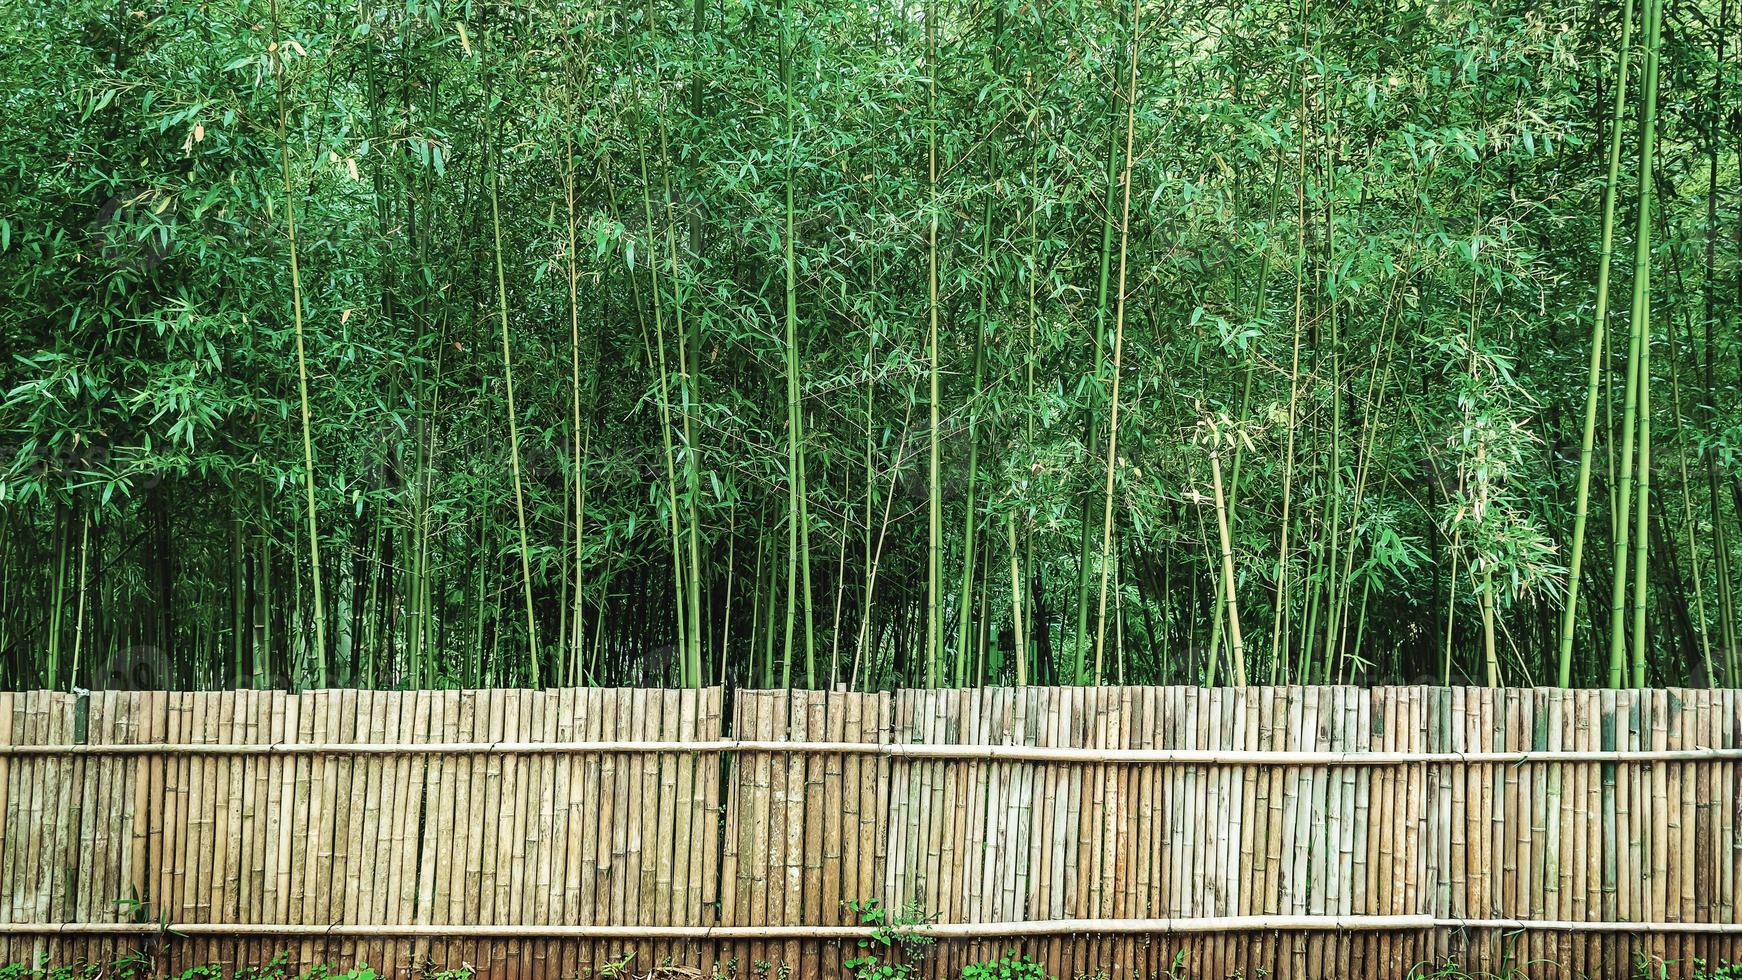 floresta de bambu em chiang mai tailândia foto